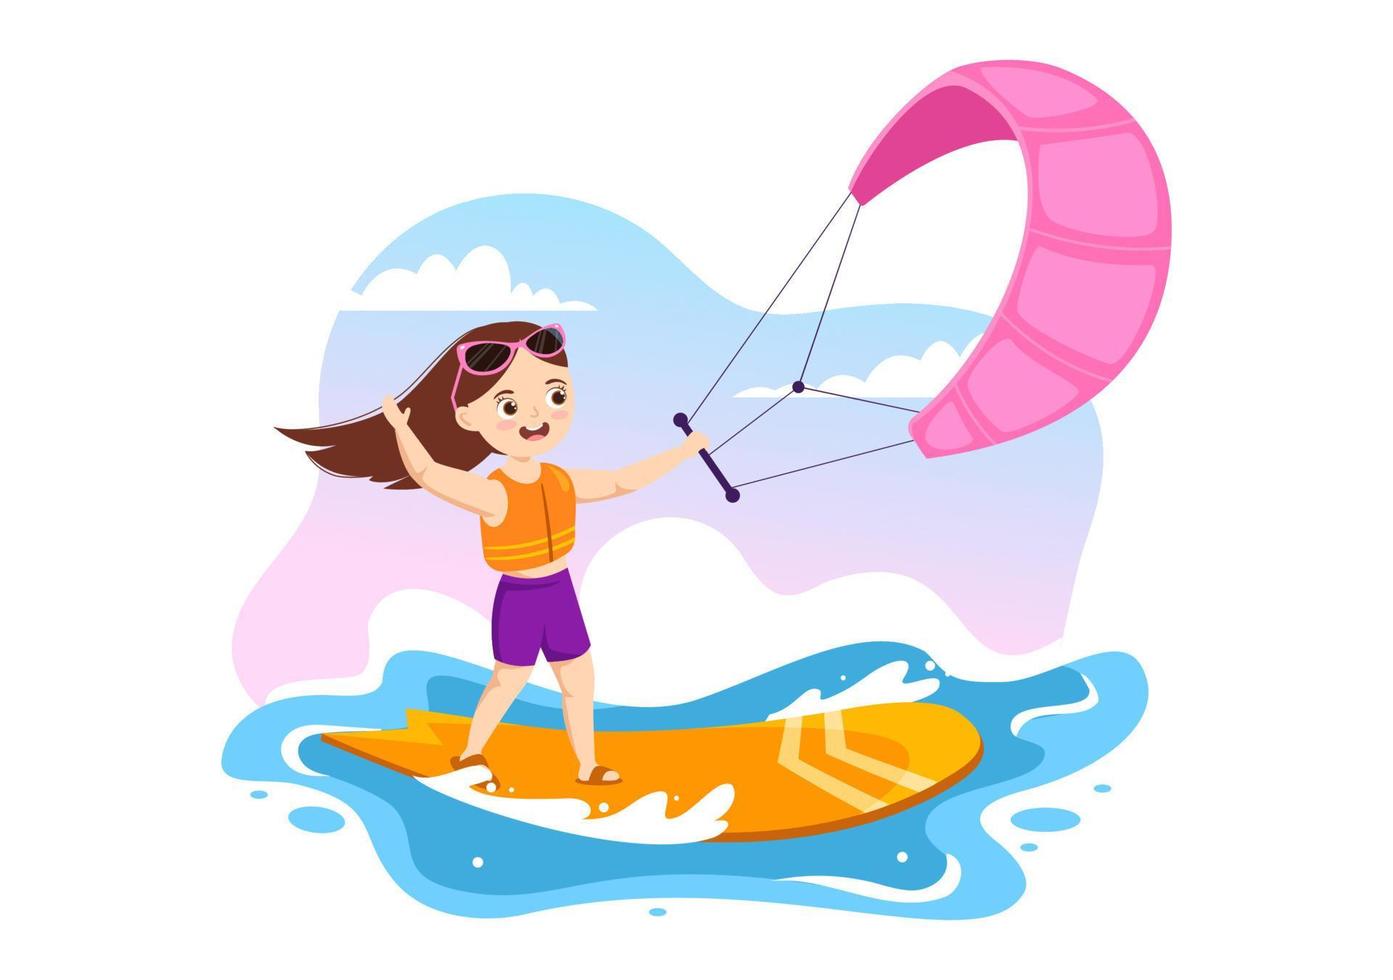 ilustración de kitesurf con niños kite surfista de pie en kiteboard en el mar de verano en deportes acuáticos extremos plantilla dibujada a mano de dibujos animados planos vector